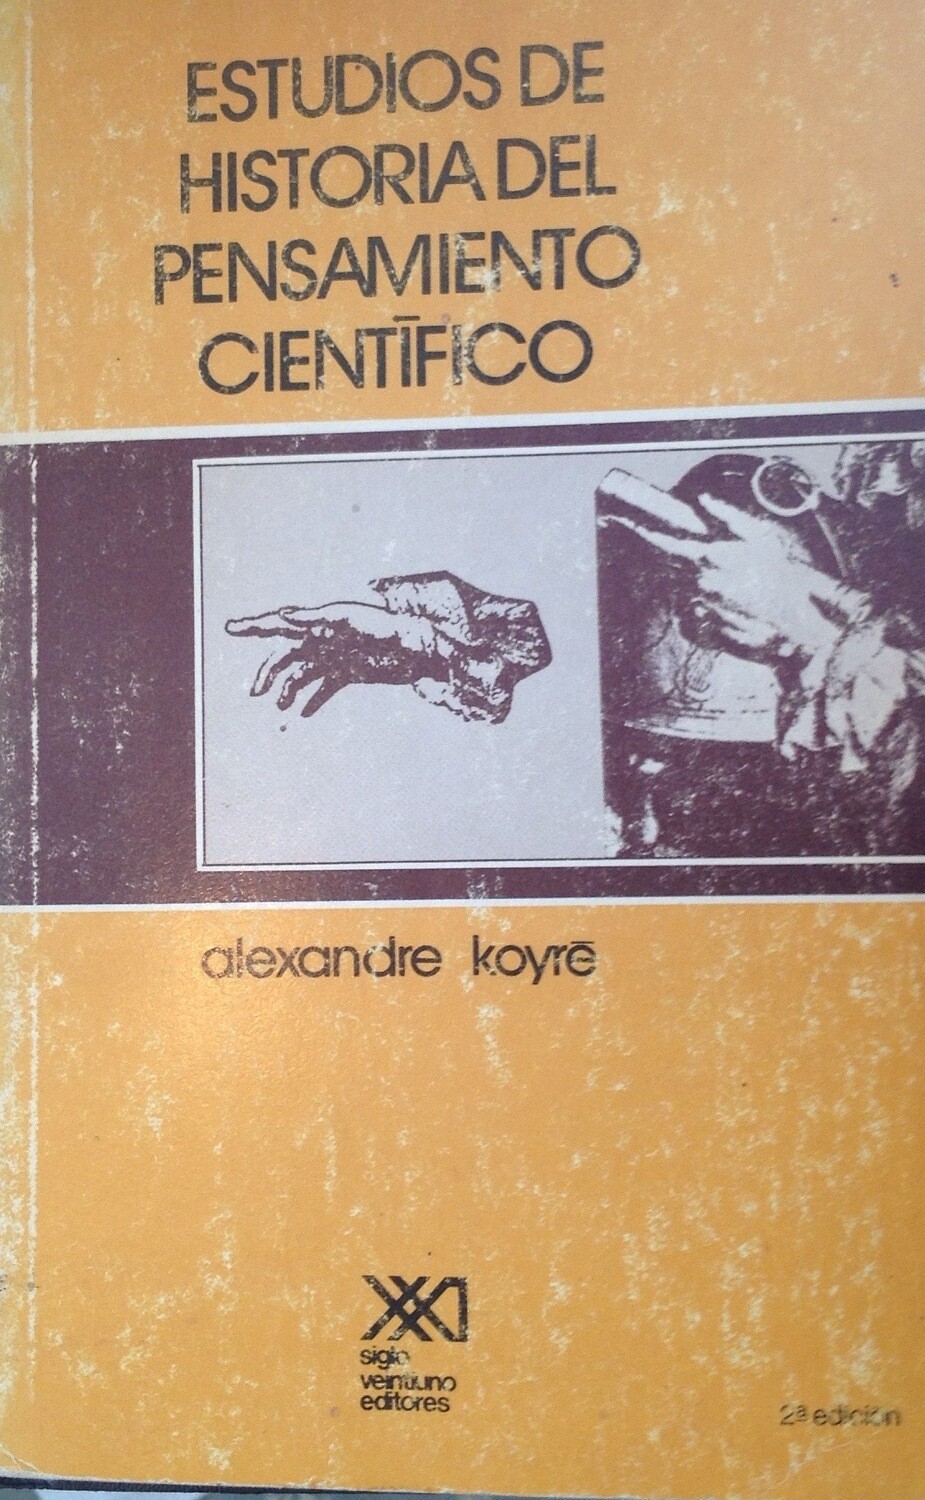 A. Koyre, Estudios de hisotria del pensamiento científico